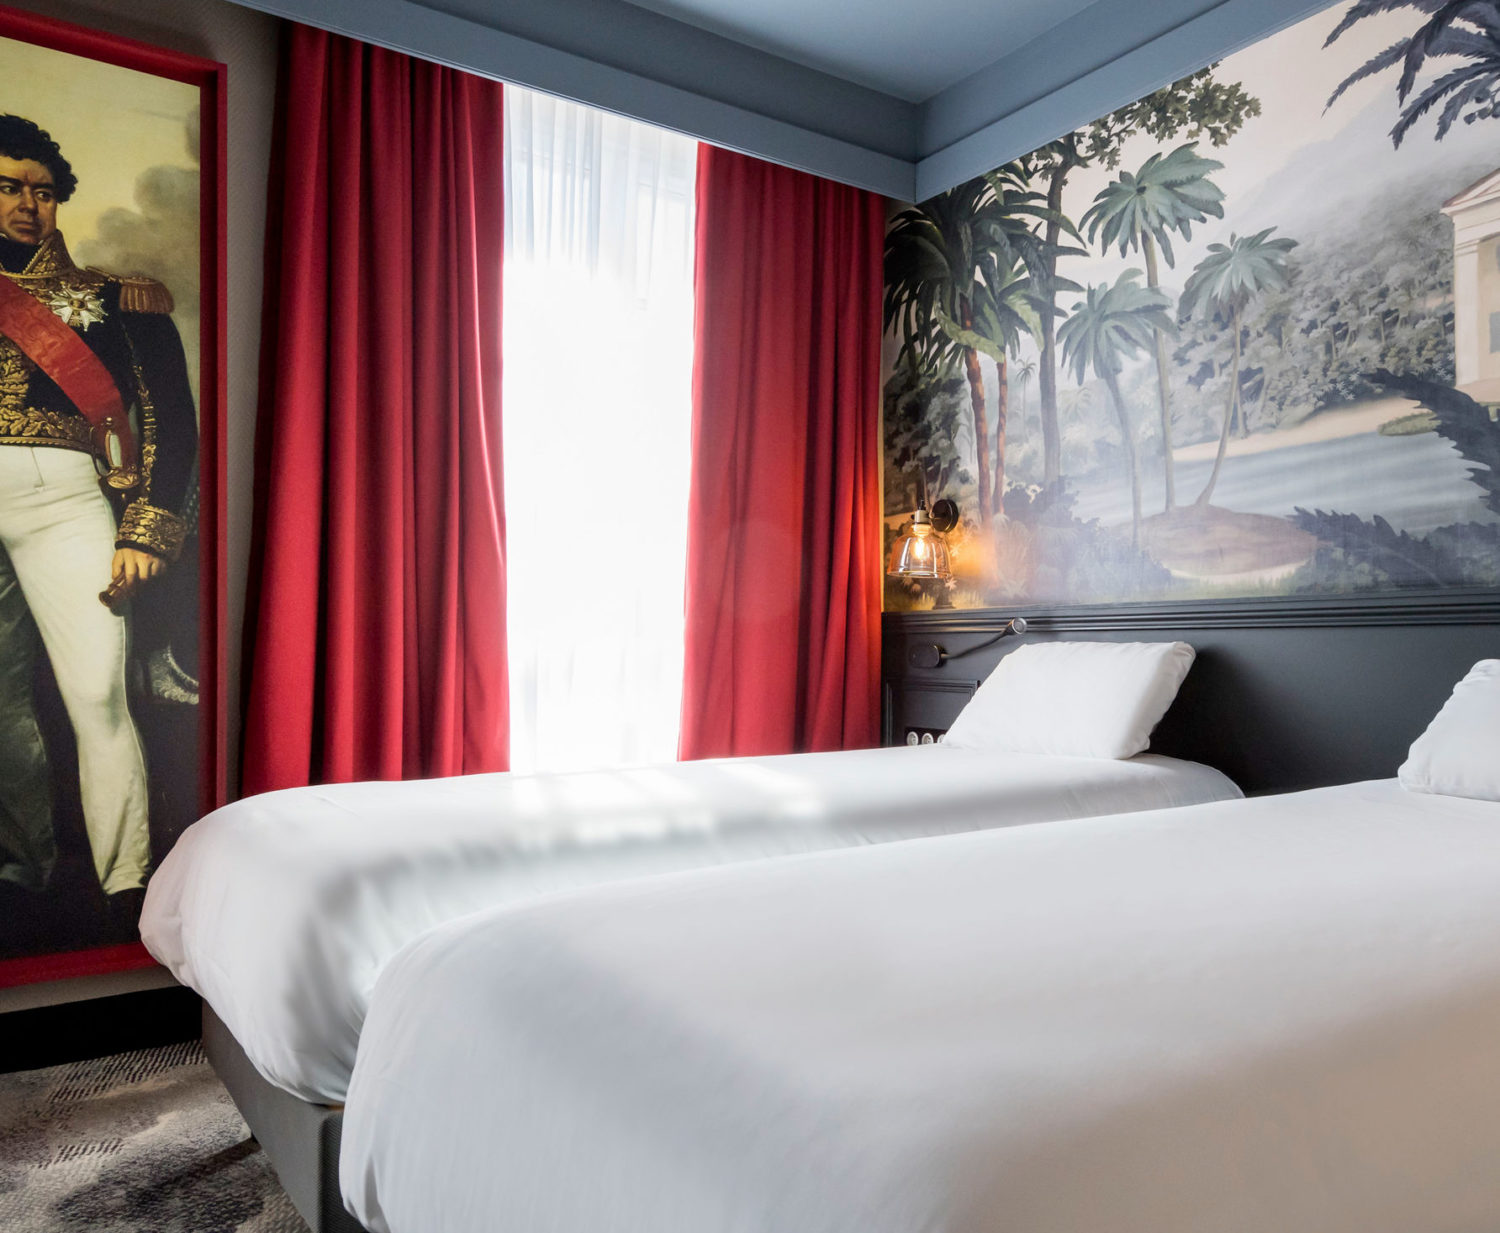 Rénovation des chambres de l'hôtel Mercure de La Corderie Royale sur le thème de la navigation